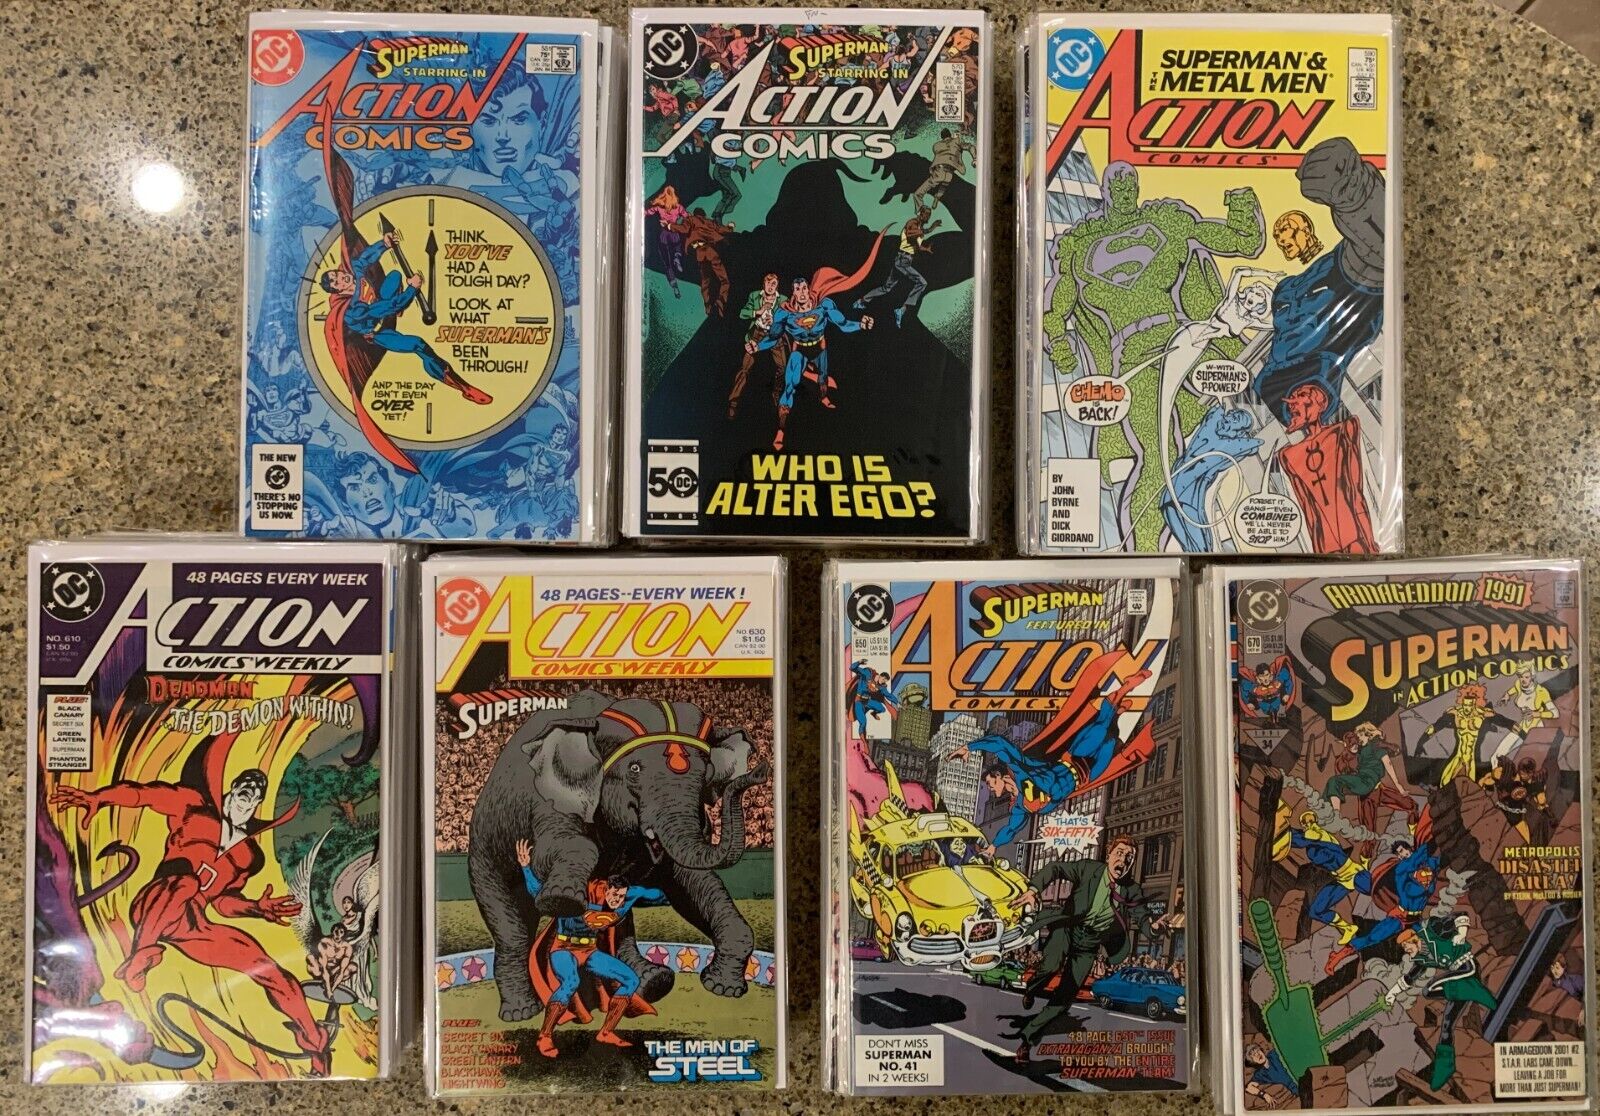 DC Comics: Action Comics (1938), Issues 551-694, Annuals 1-6 (151 Total comics)